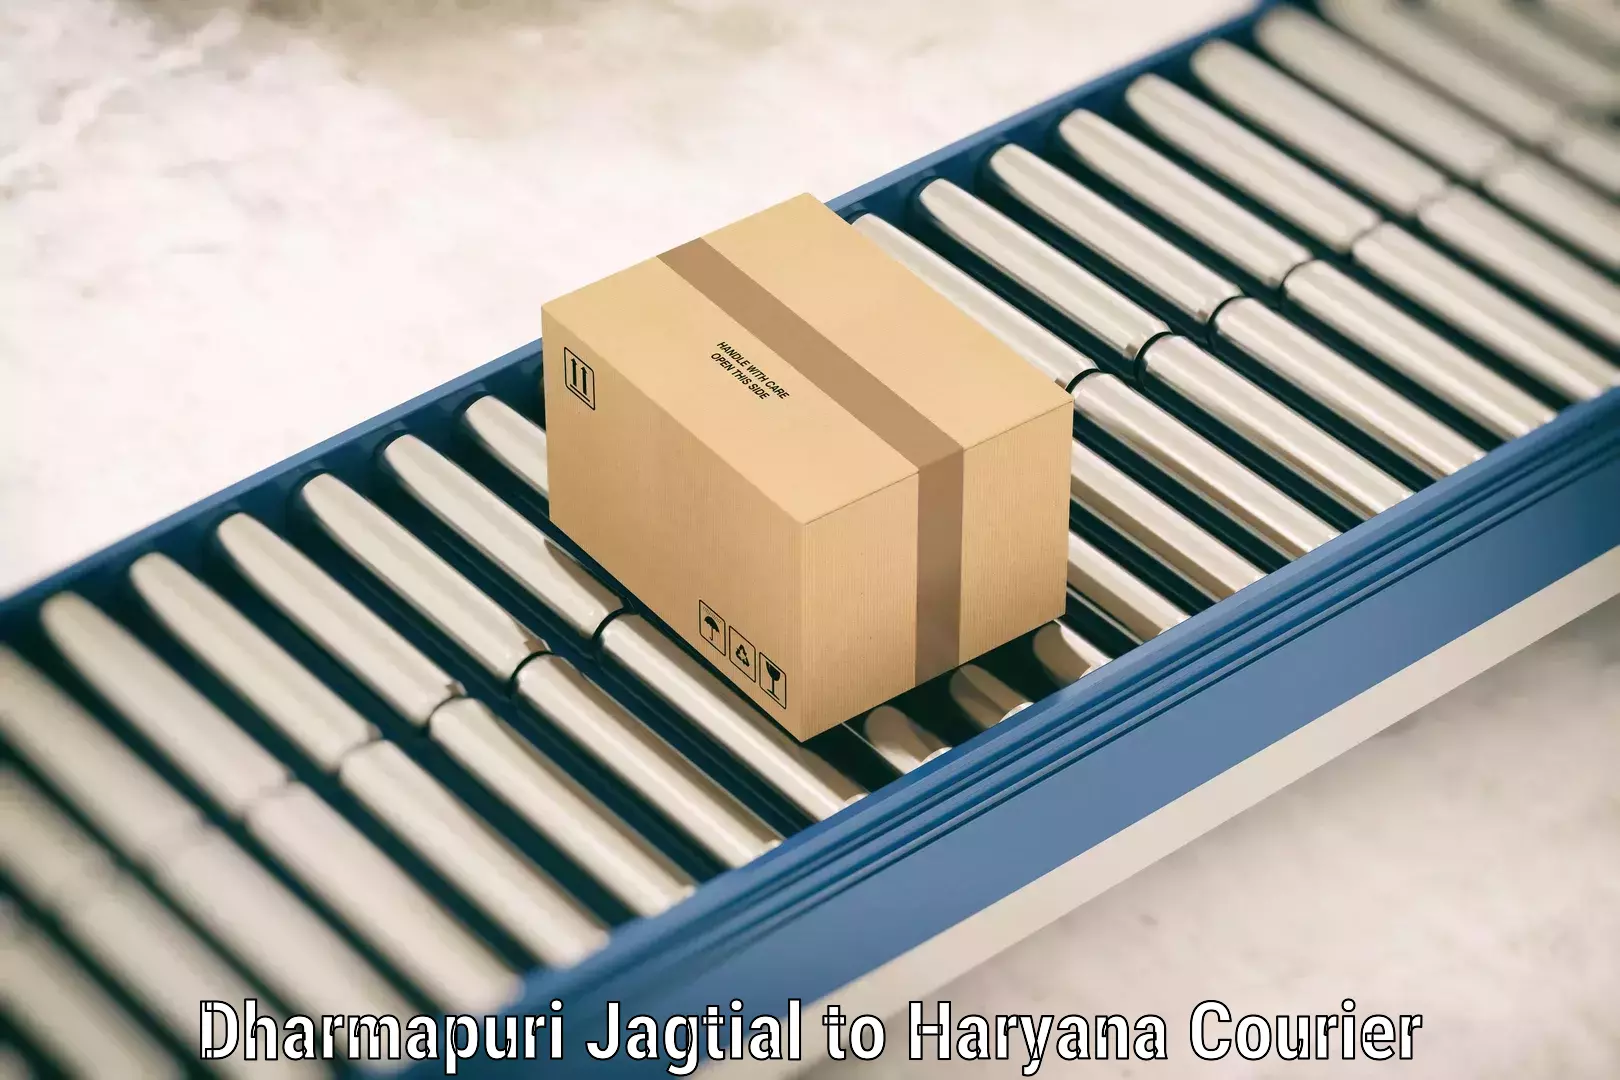 Streamlined baggage delivery Dharmapuri Jagtial to Hansi